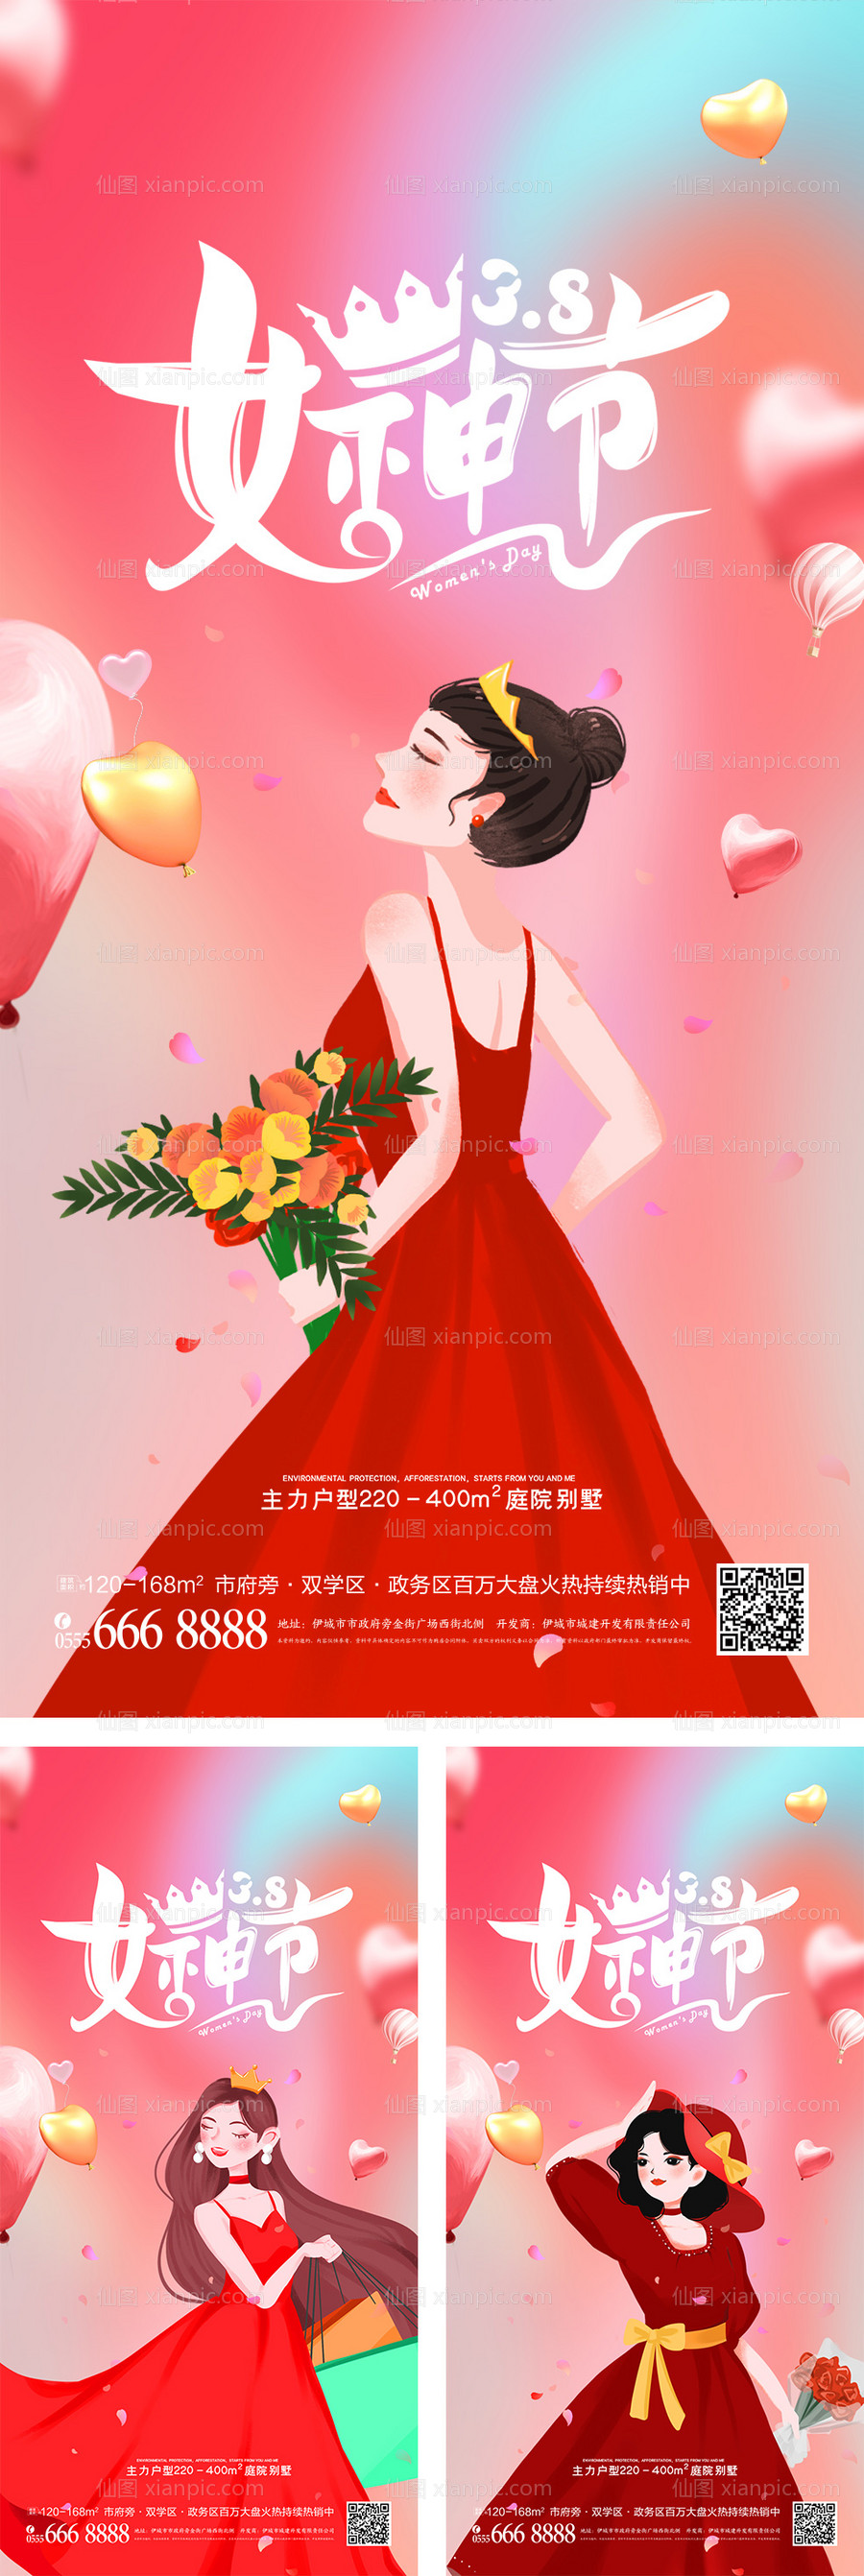 素材乐-女神节妇女节系列海报